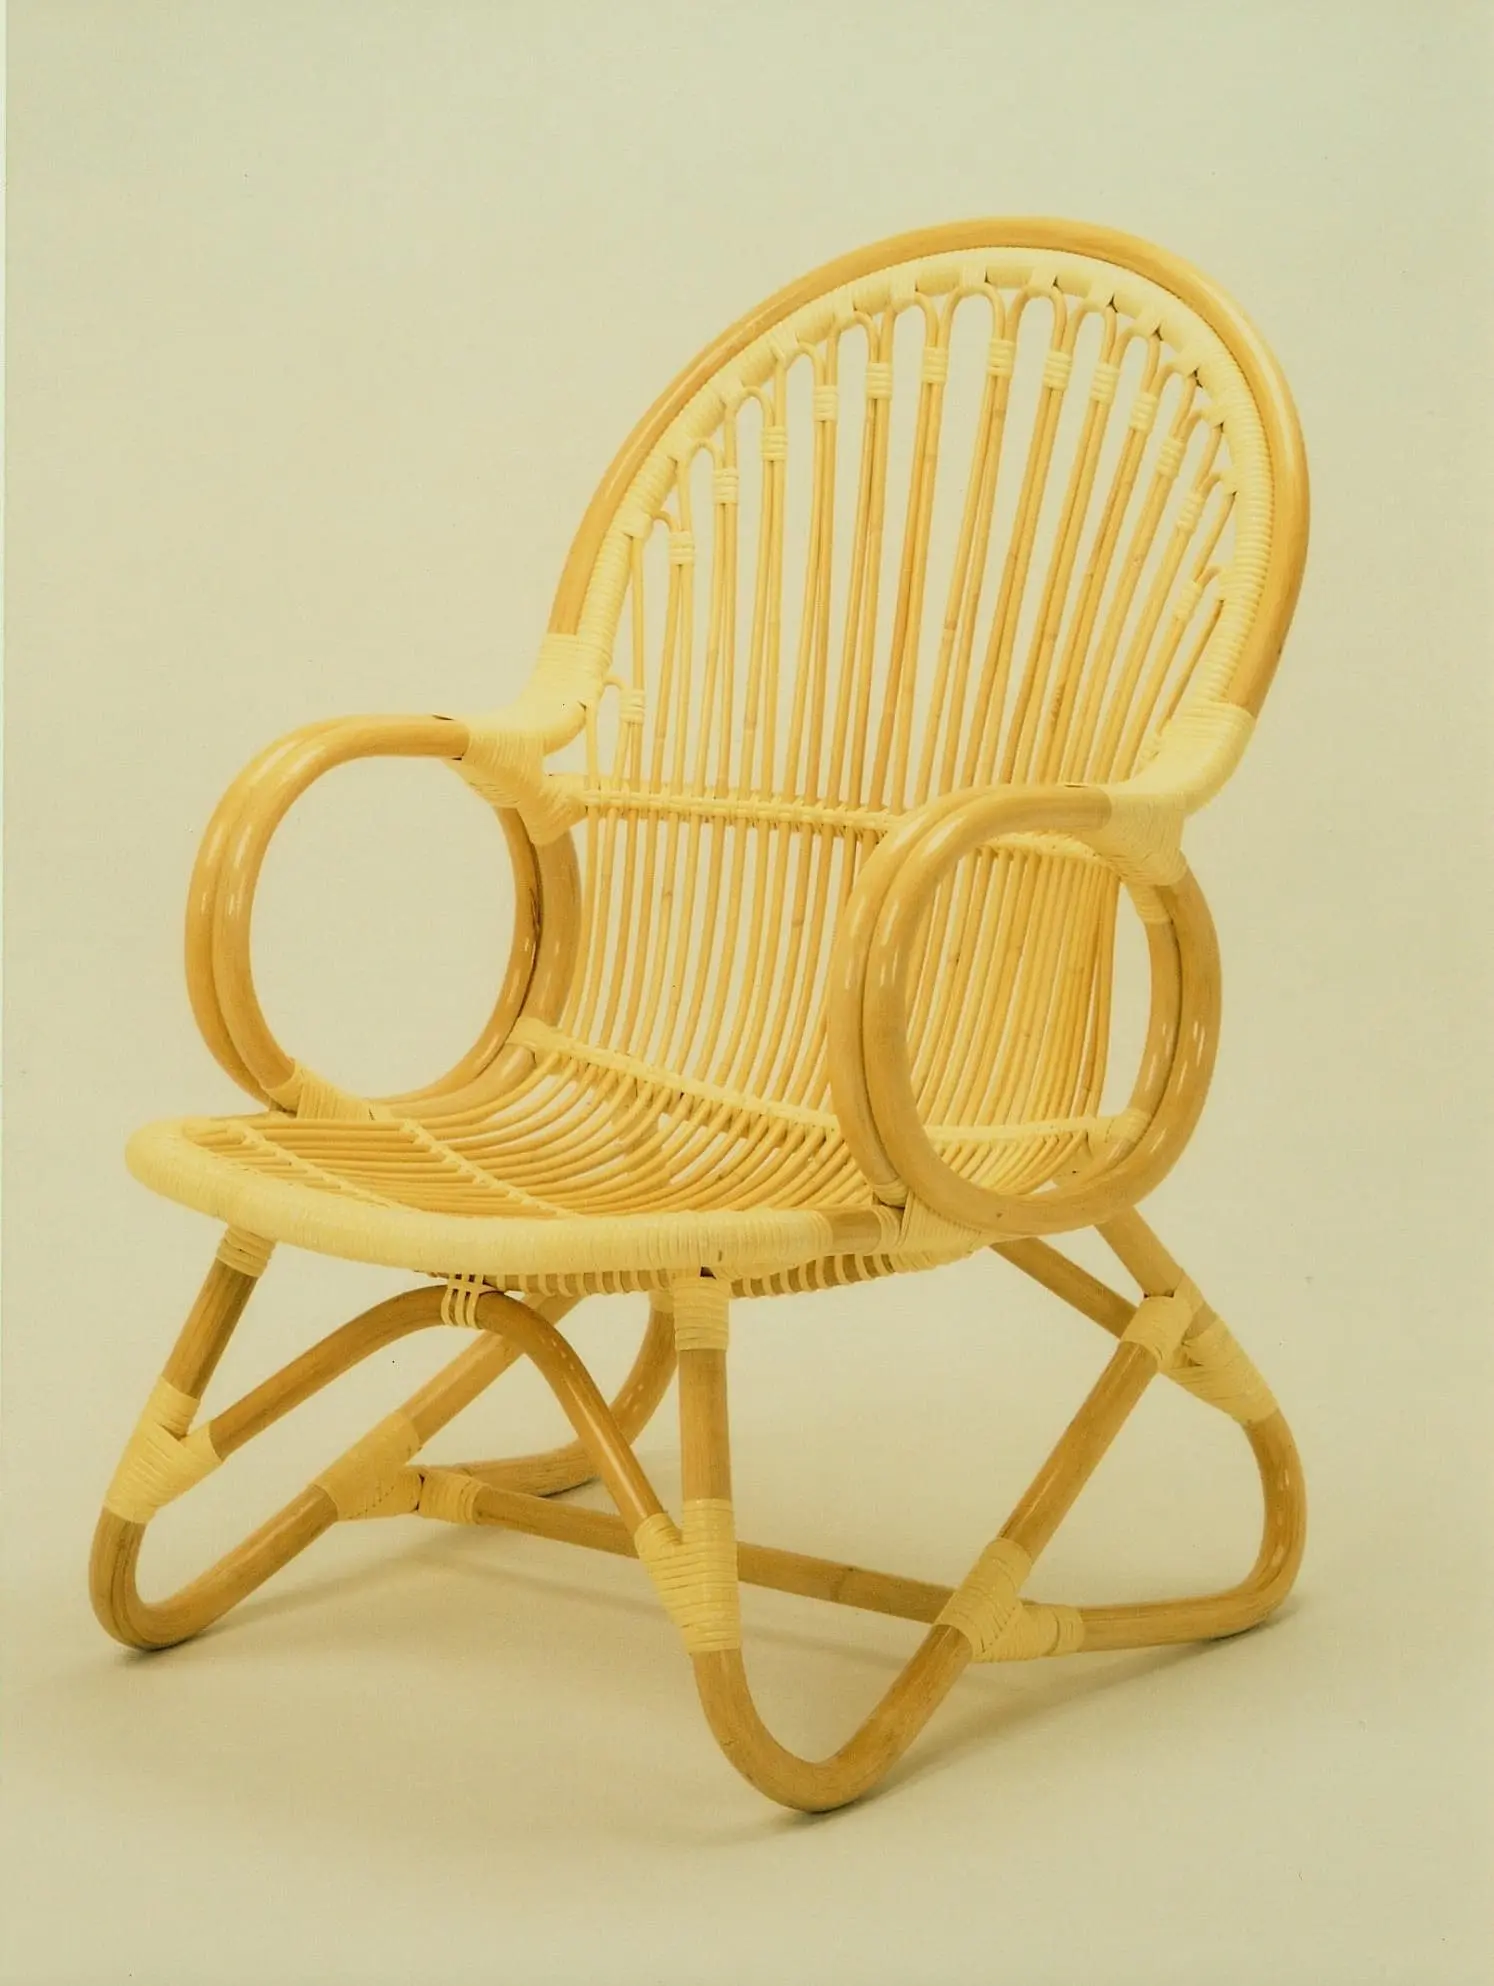 籐椅子 籐家具 籐製品